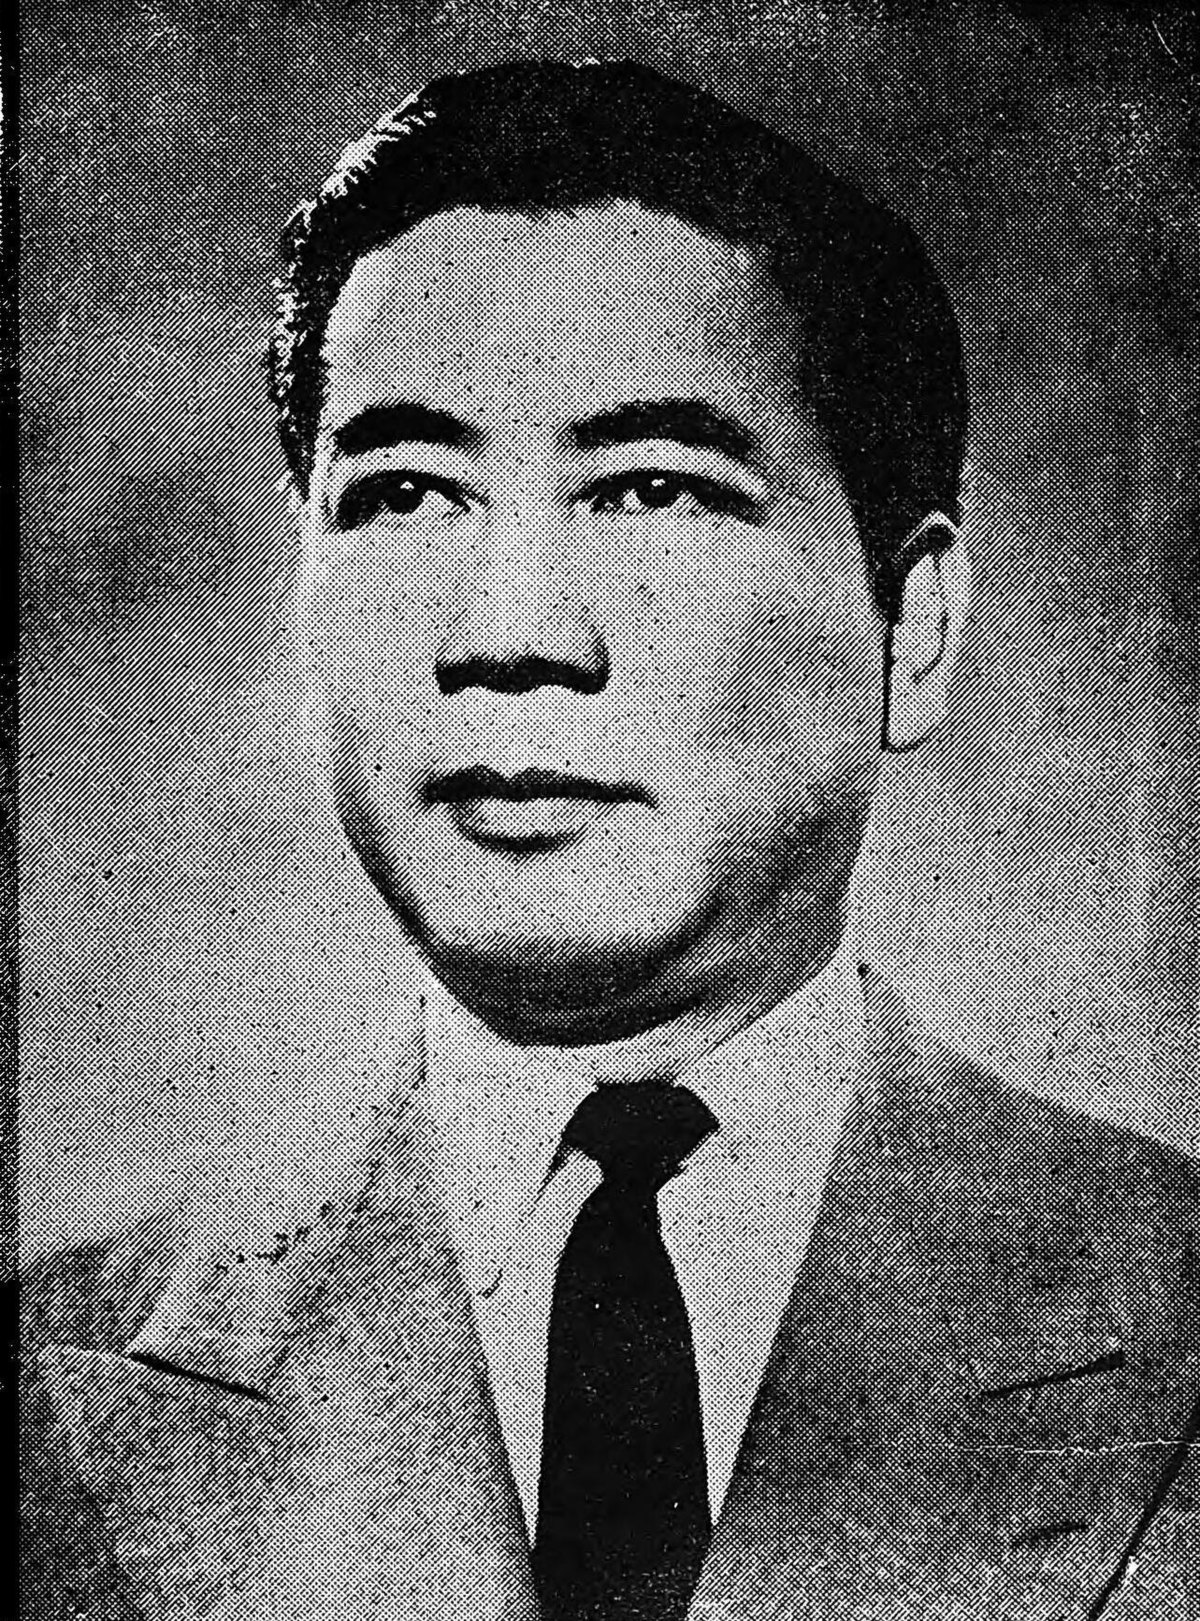 Chào đón bạn đến với những hình ảnh người lãnh đạo kiệt xuất của người tổng thống Ngô Đình Diệm - người đã có nhiều đóng góp cho sự phát triển của Việt Nam trong quá khứ. Hãy đến và tìm hiểu thêm về con người, tầm nhìn và chính sách của người ấy.